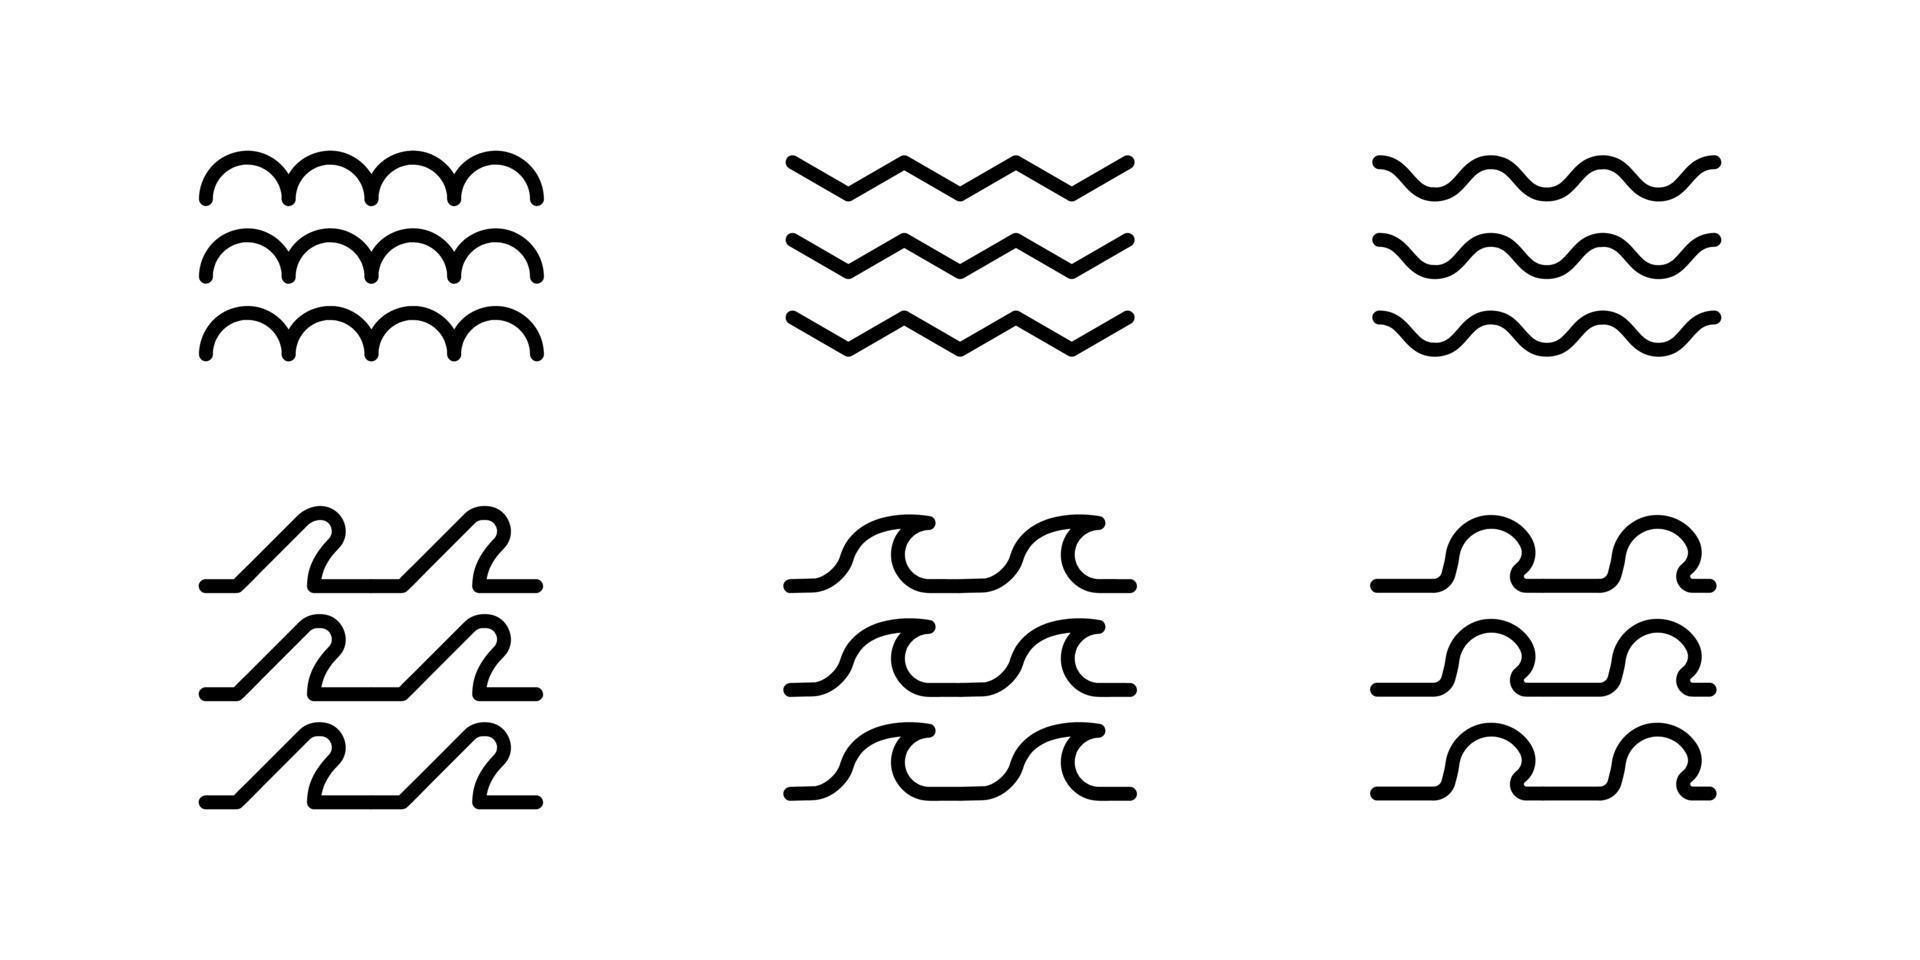 diferentes ondas do mar com a mesma espessura de linha. design de logotipo, sites e designs. onda do mar consiste em fatores como o vento. Conjunto de 6 peças de ícones modernos do mar. vetor